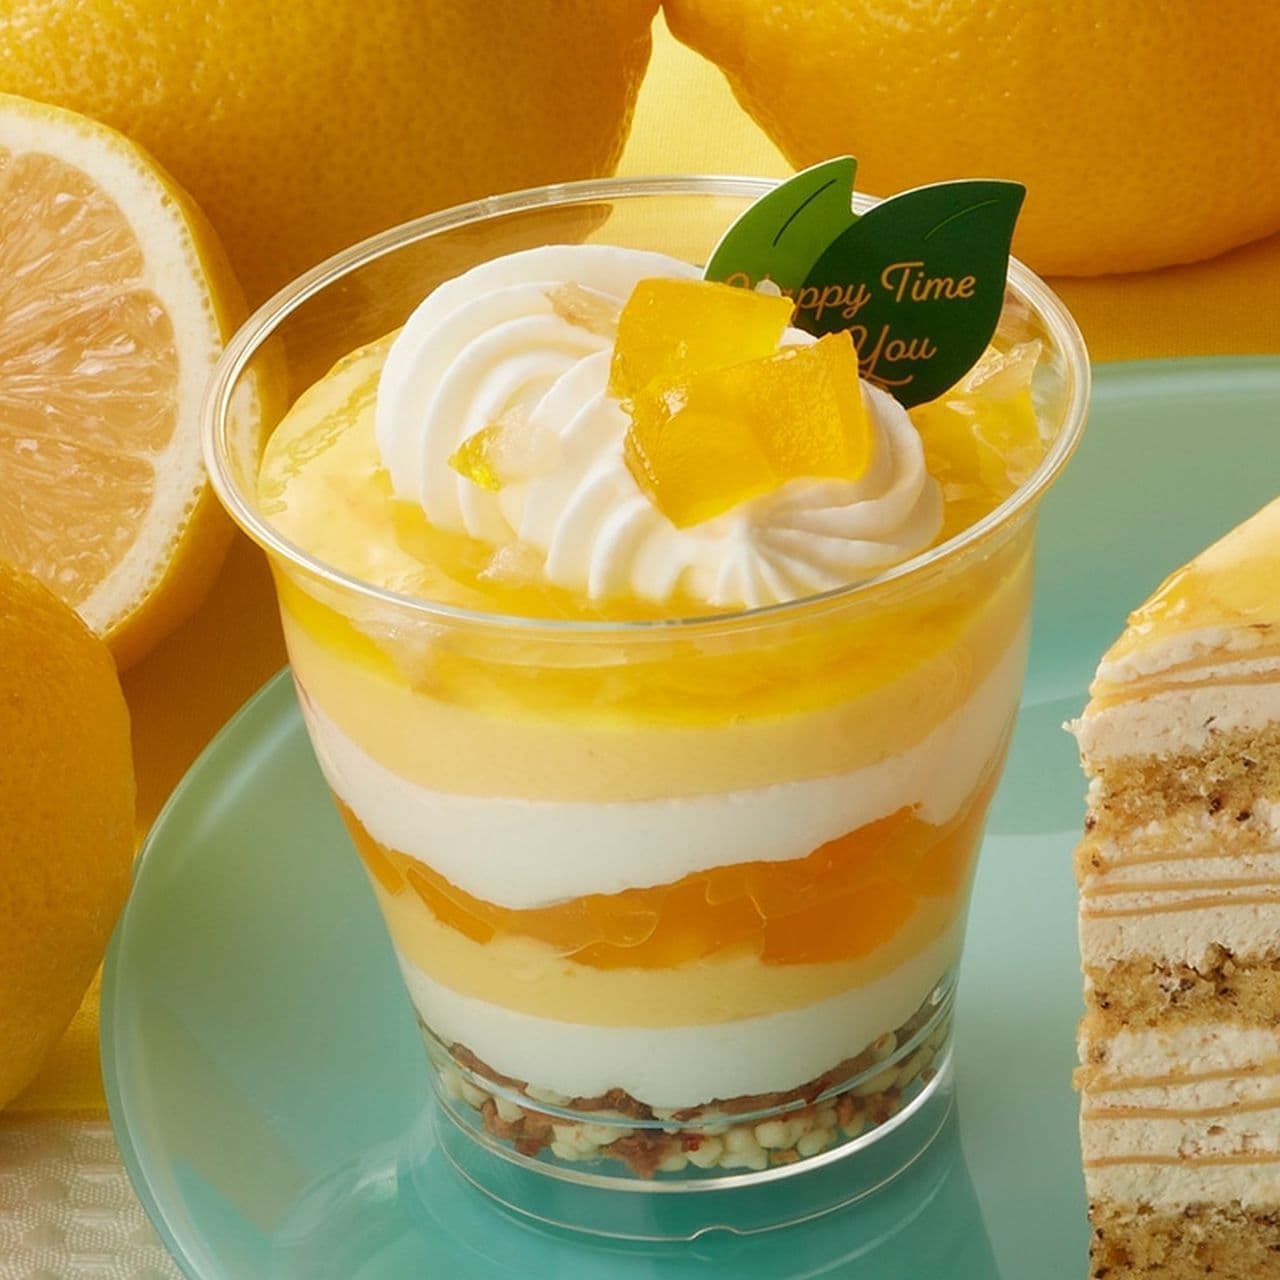 Shateraise "Setouchi Lemon Cup Dessert